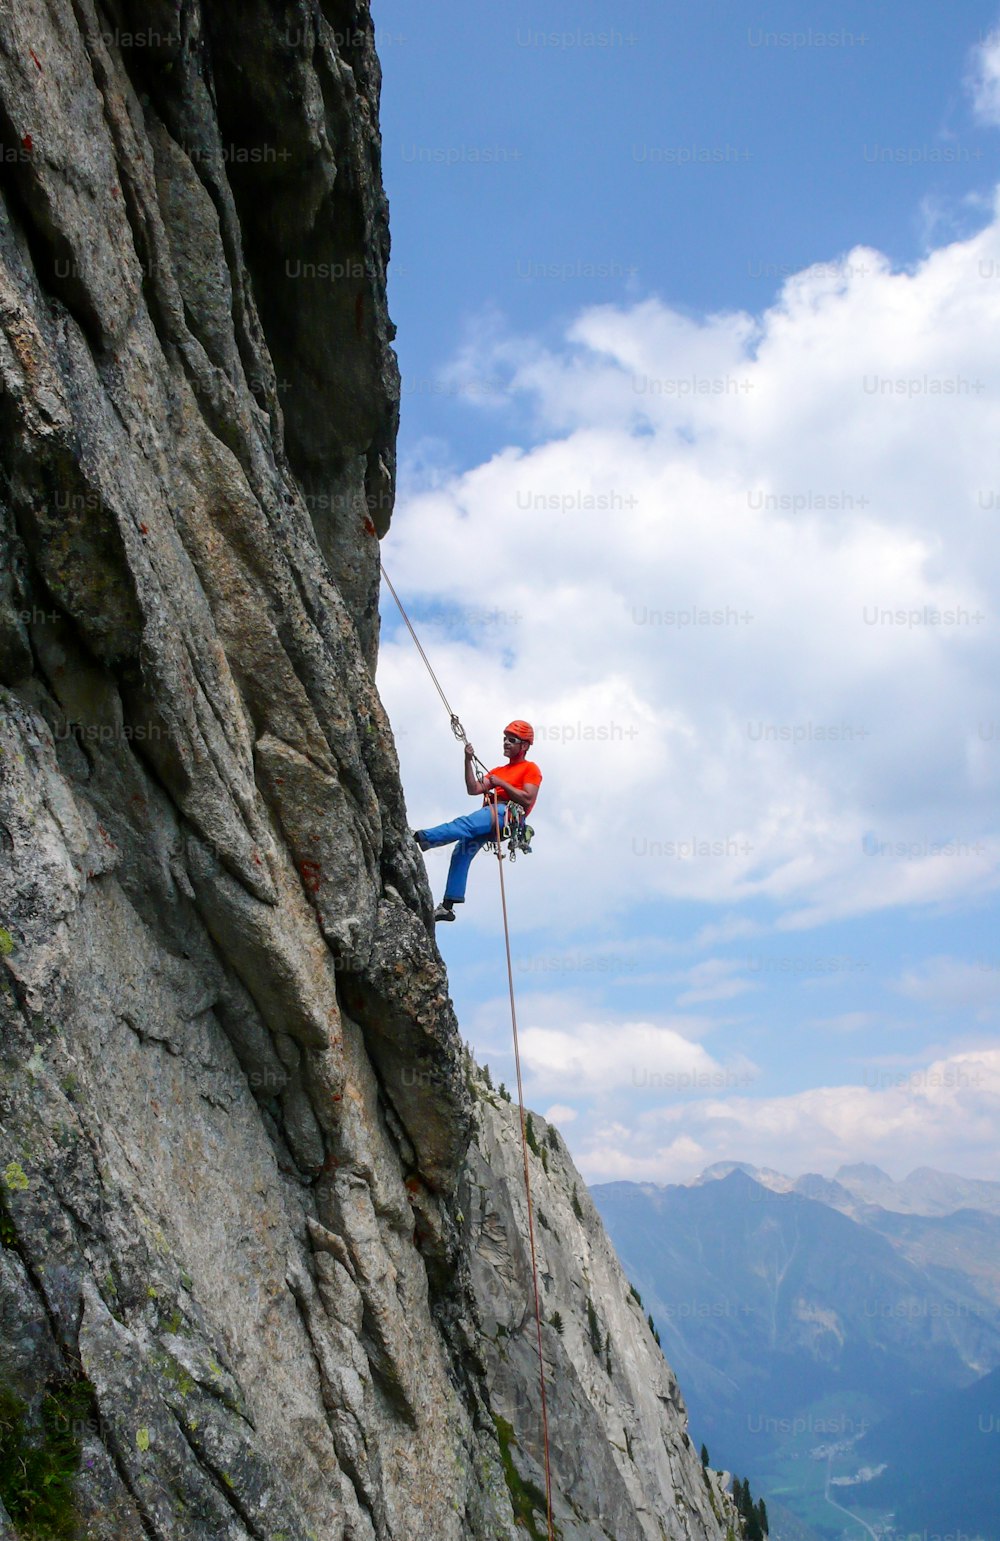 Un escalador en rápel en una empinada ruta de escalada en roca en los Alpes suizos después de una dura escalada